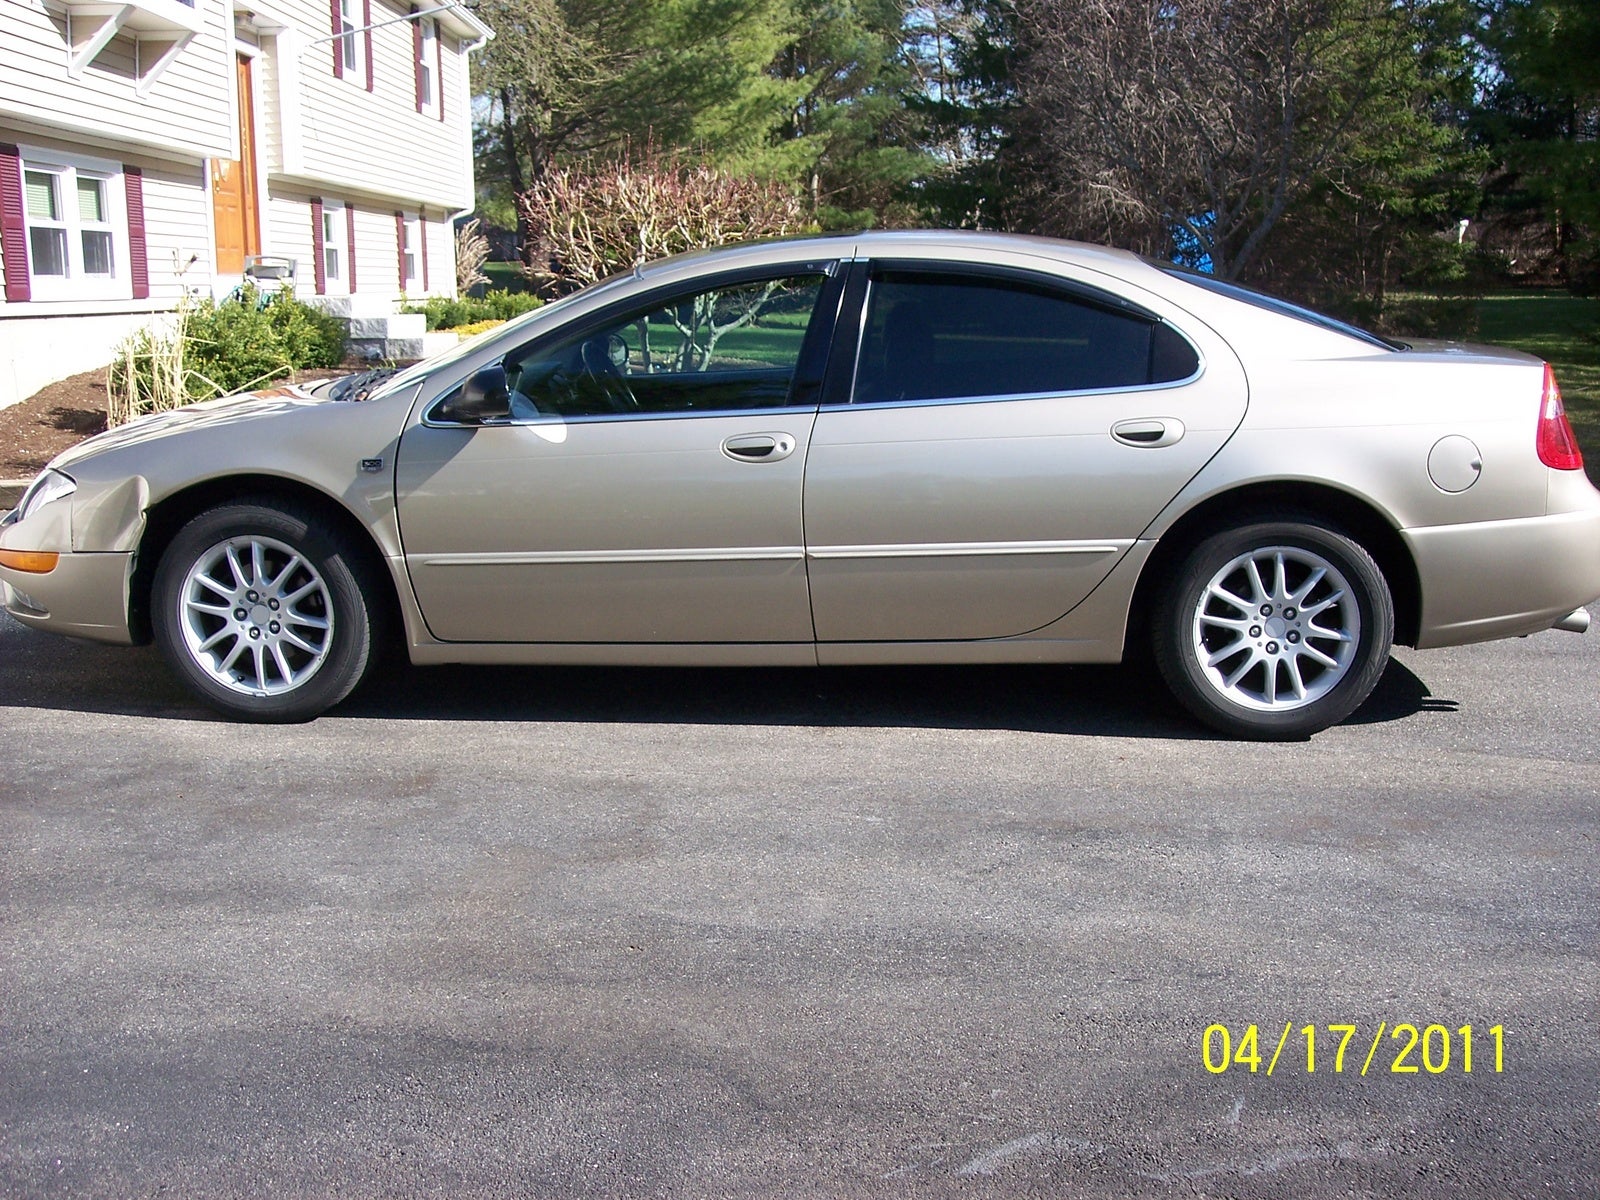 2004 Chrysler 300m horsepower #3